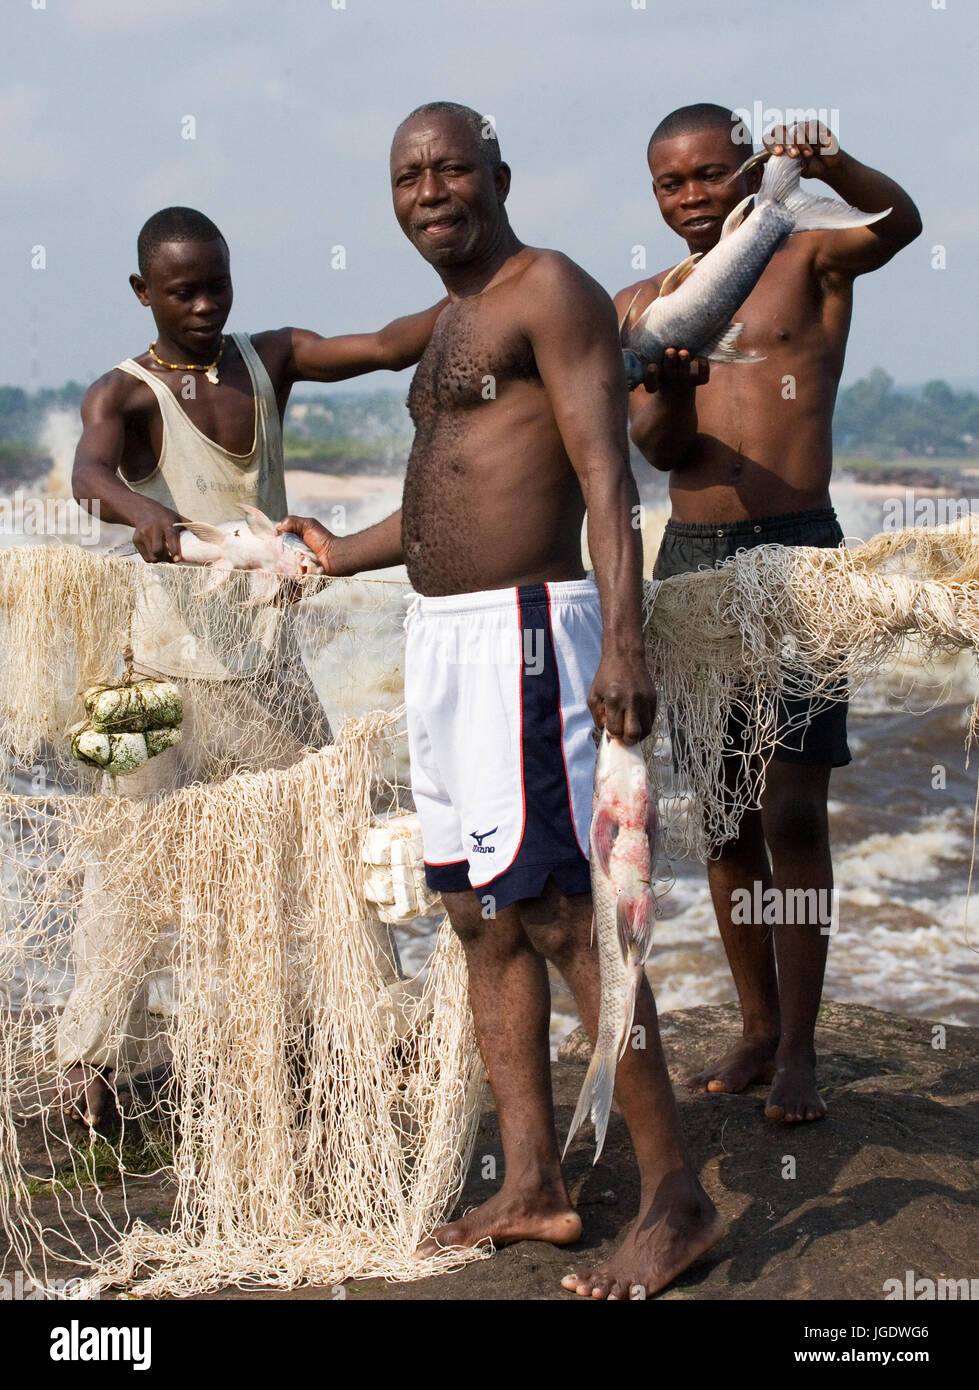 République du Congo, banlieue de Brazzaville - 09 MAI 2007 : les pêcheurs de poissons près de Brazzaville. Les rapides du fleuve Congo. Banque D'Images